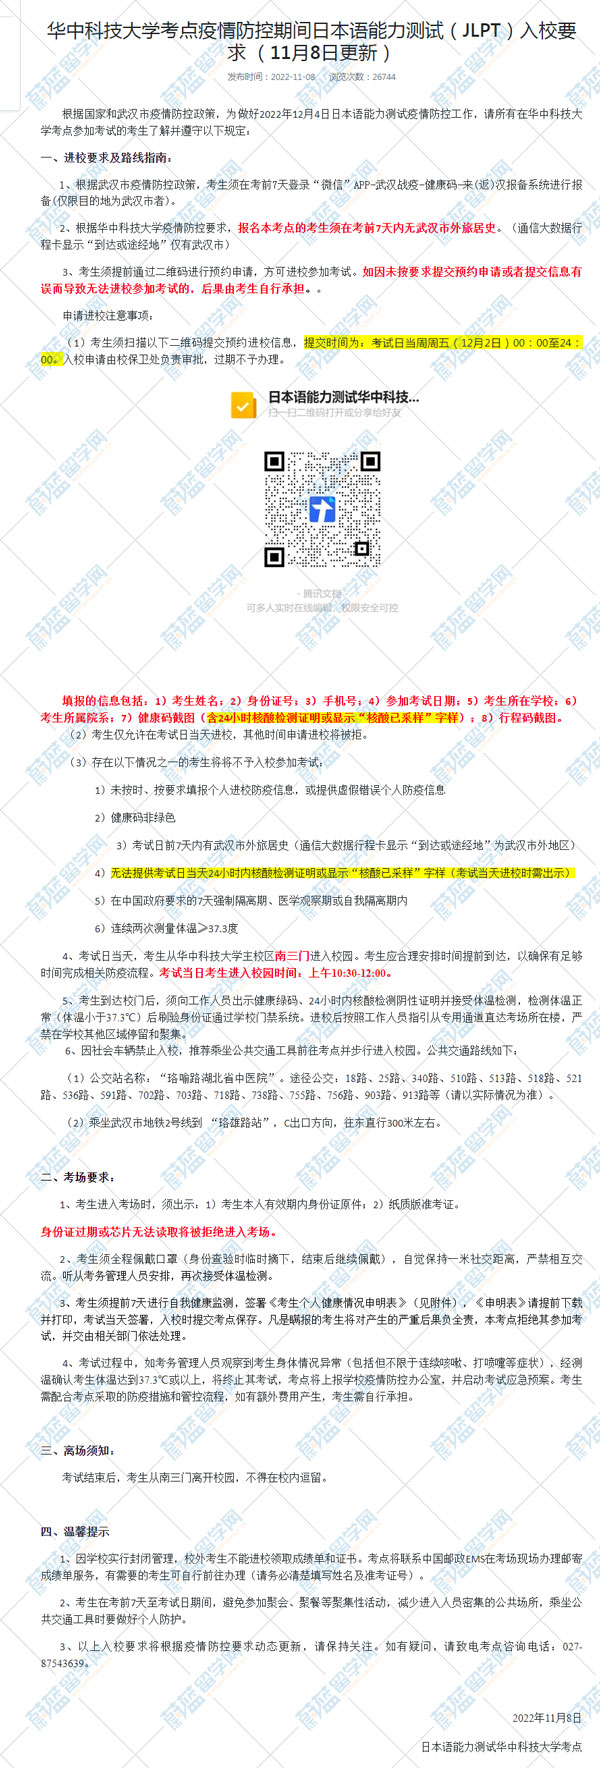 华中科技大学2022年12月日语能力考试考点入校要求.jpg